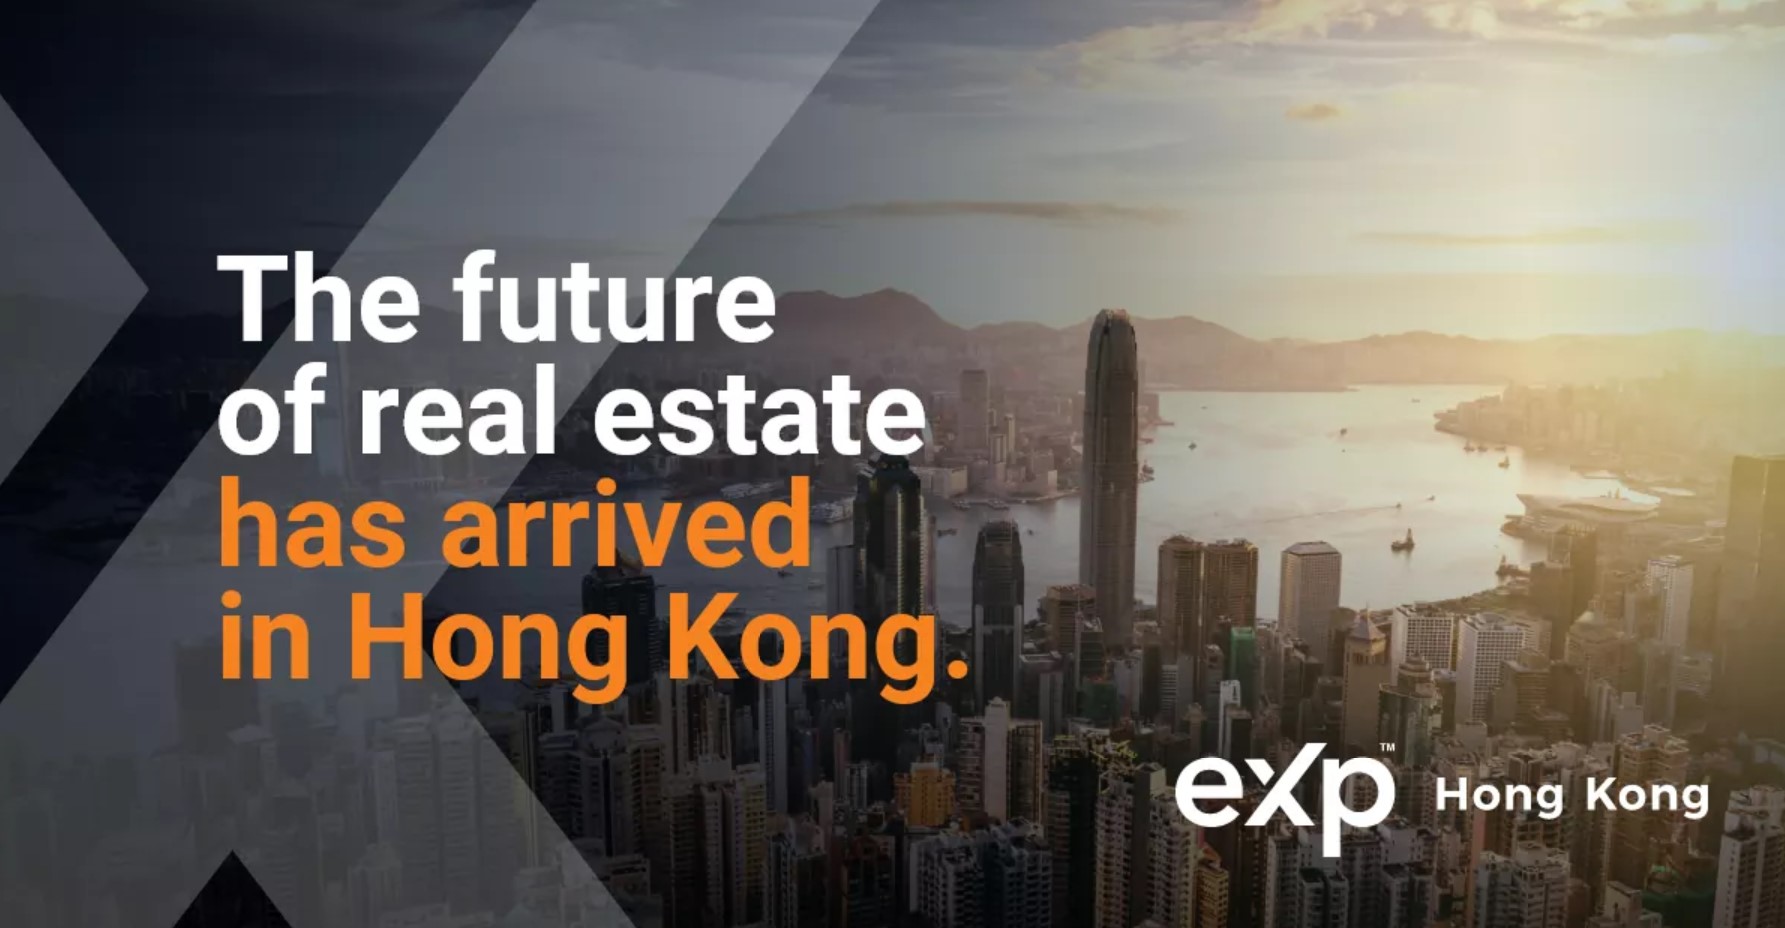 eXp Hong Kong